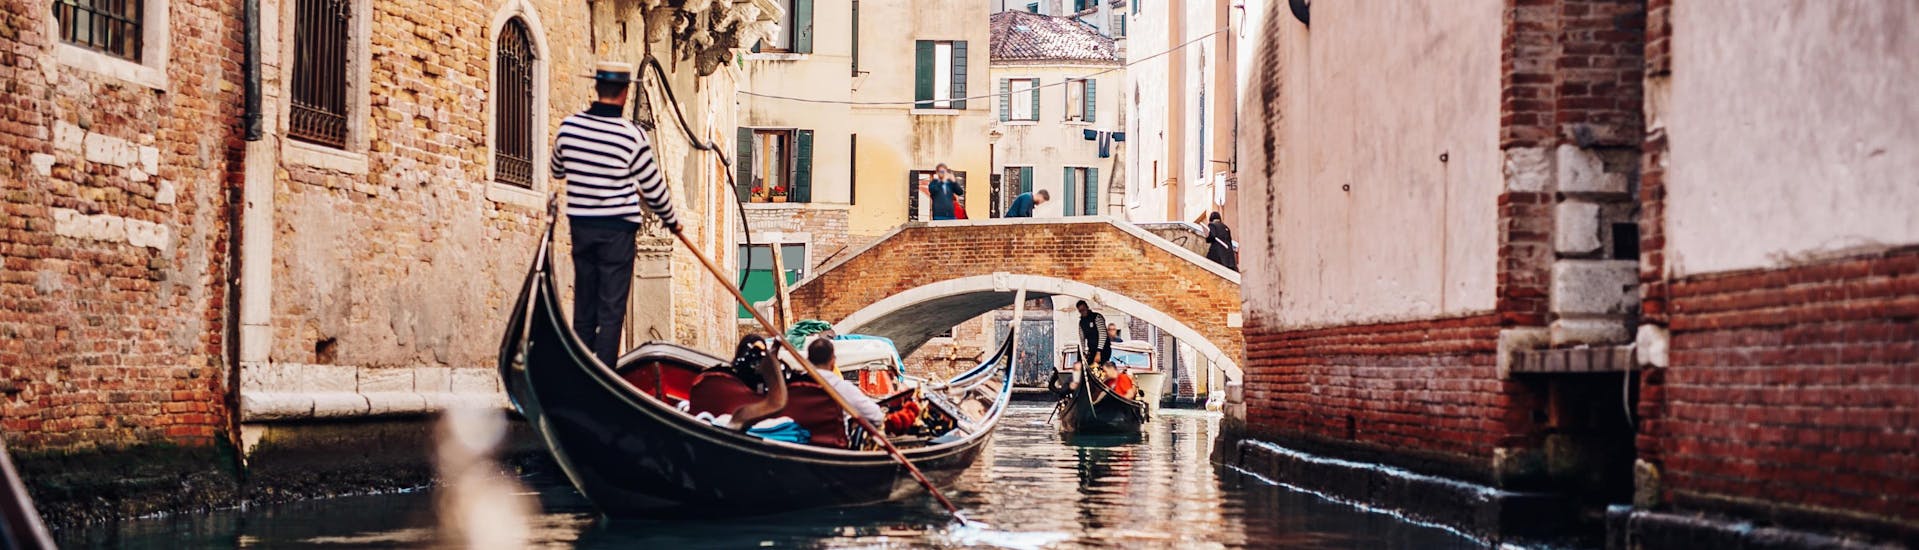 Un gondolero rema por un estrecho canal durante un paseo en góndola en Venecia.